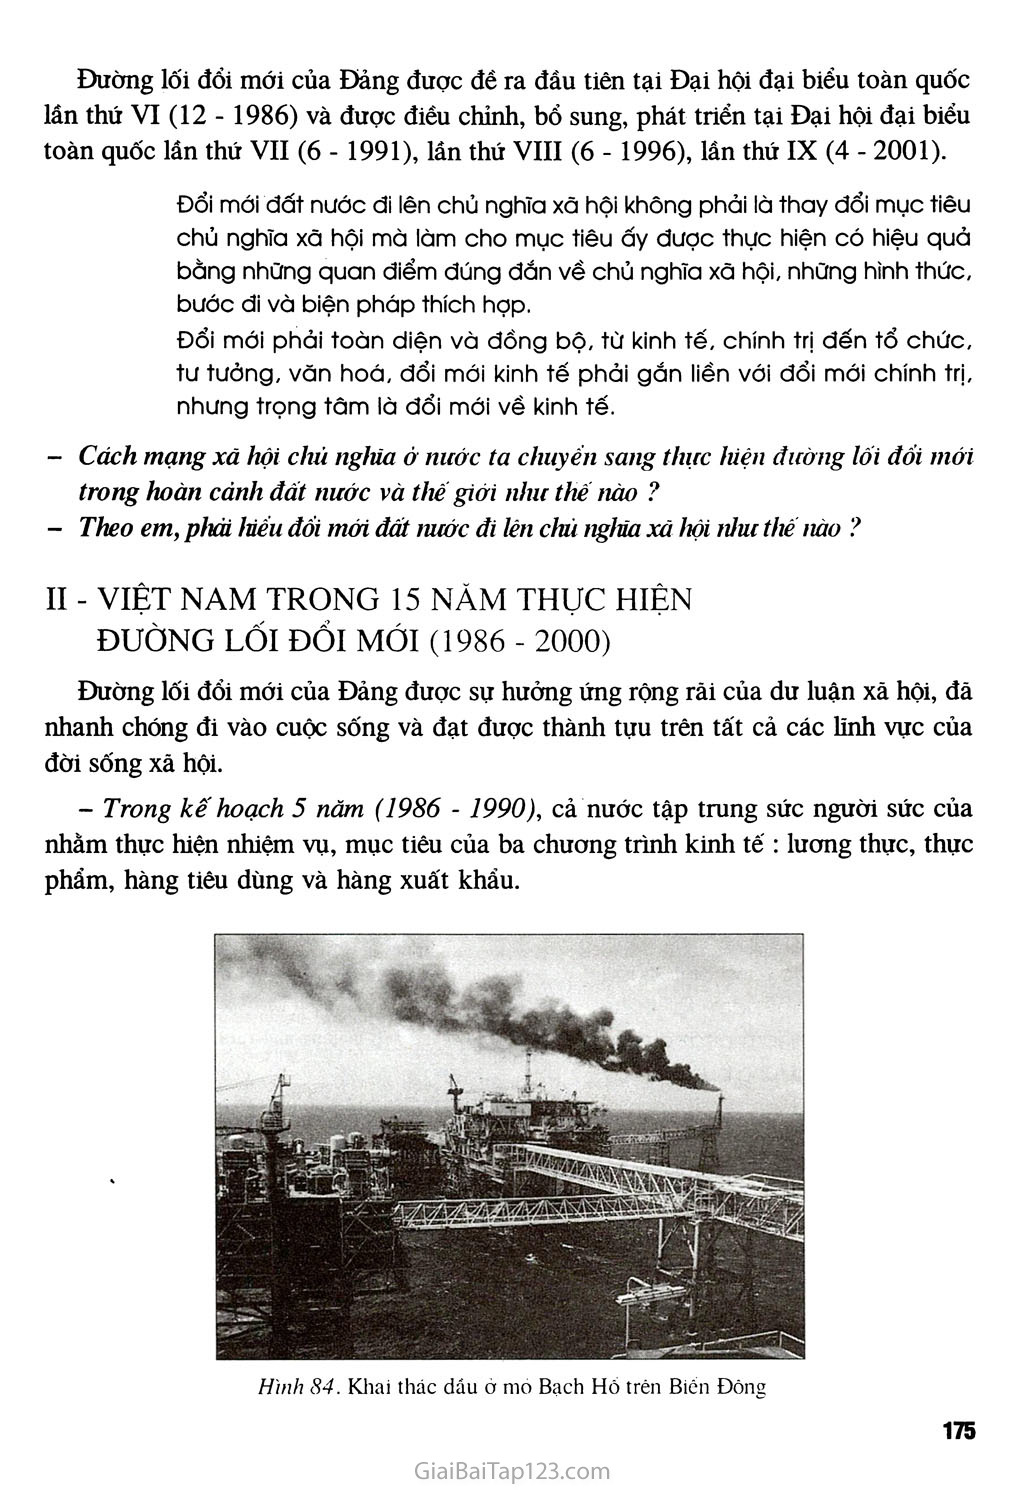 Bài 33 - Việt Nam trên đường đổi mới đi lên chủ nghĩa xã hội (từ năm 1986 đến năm 2000) trang 2